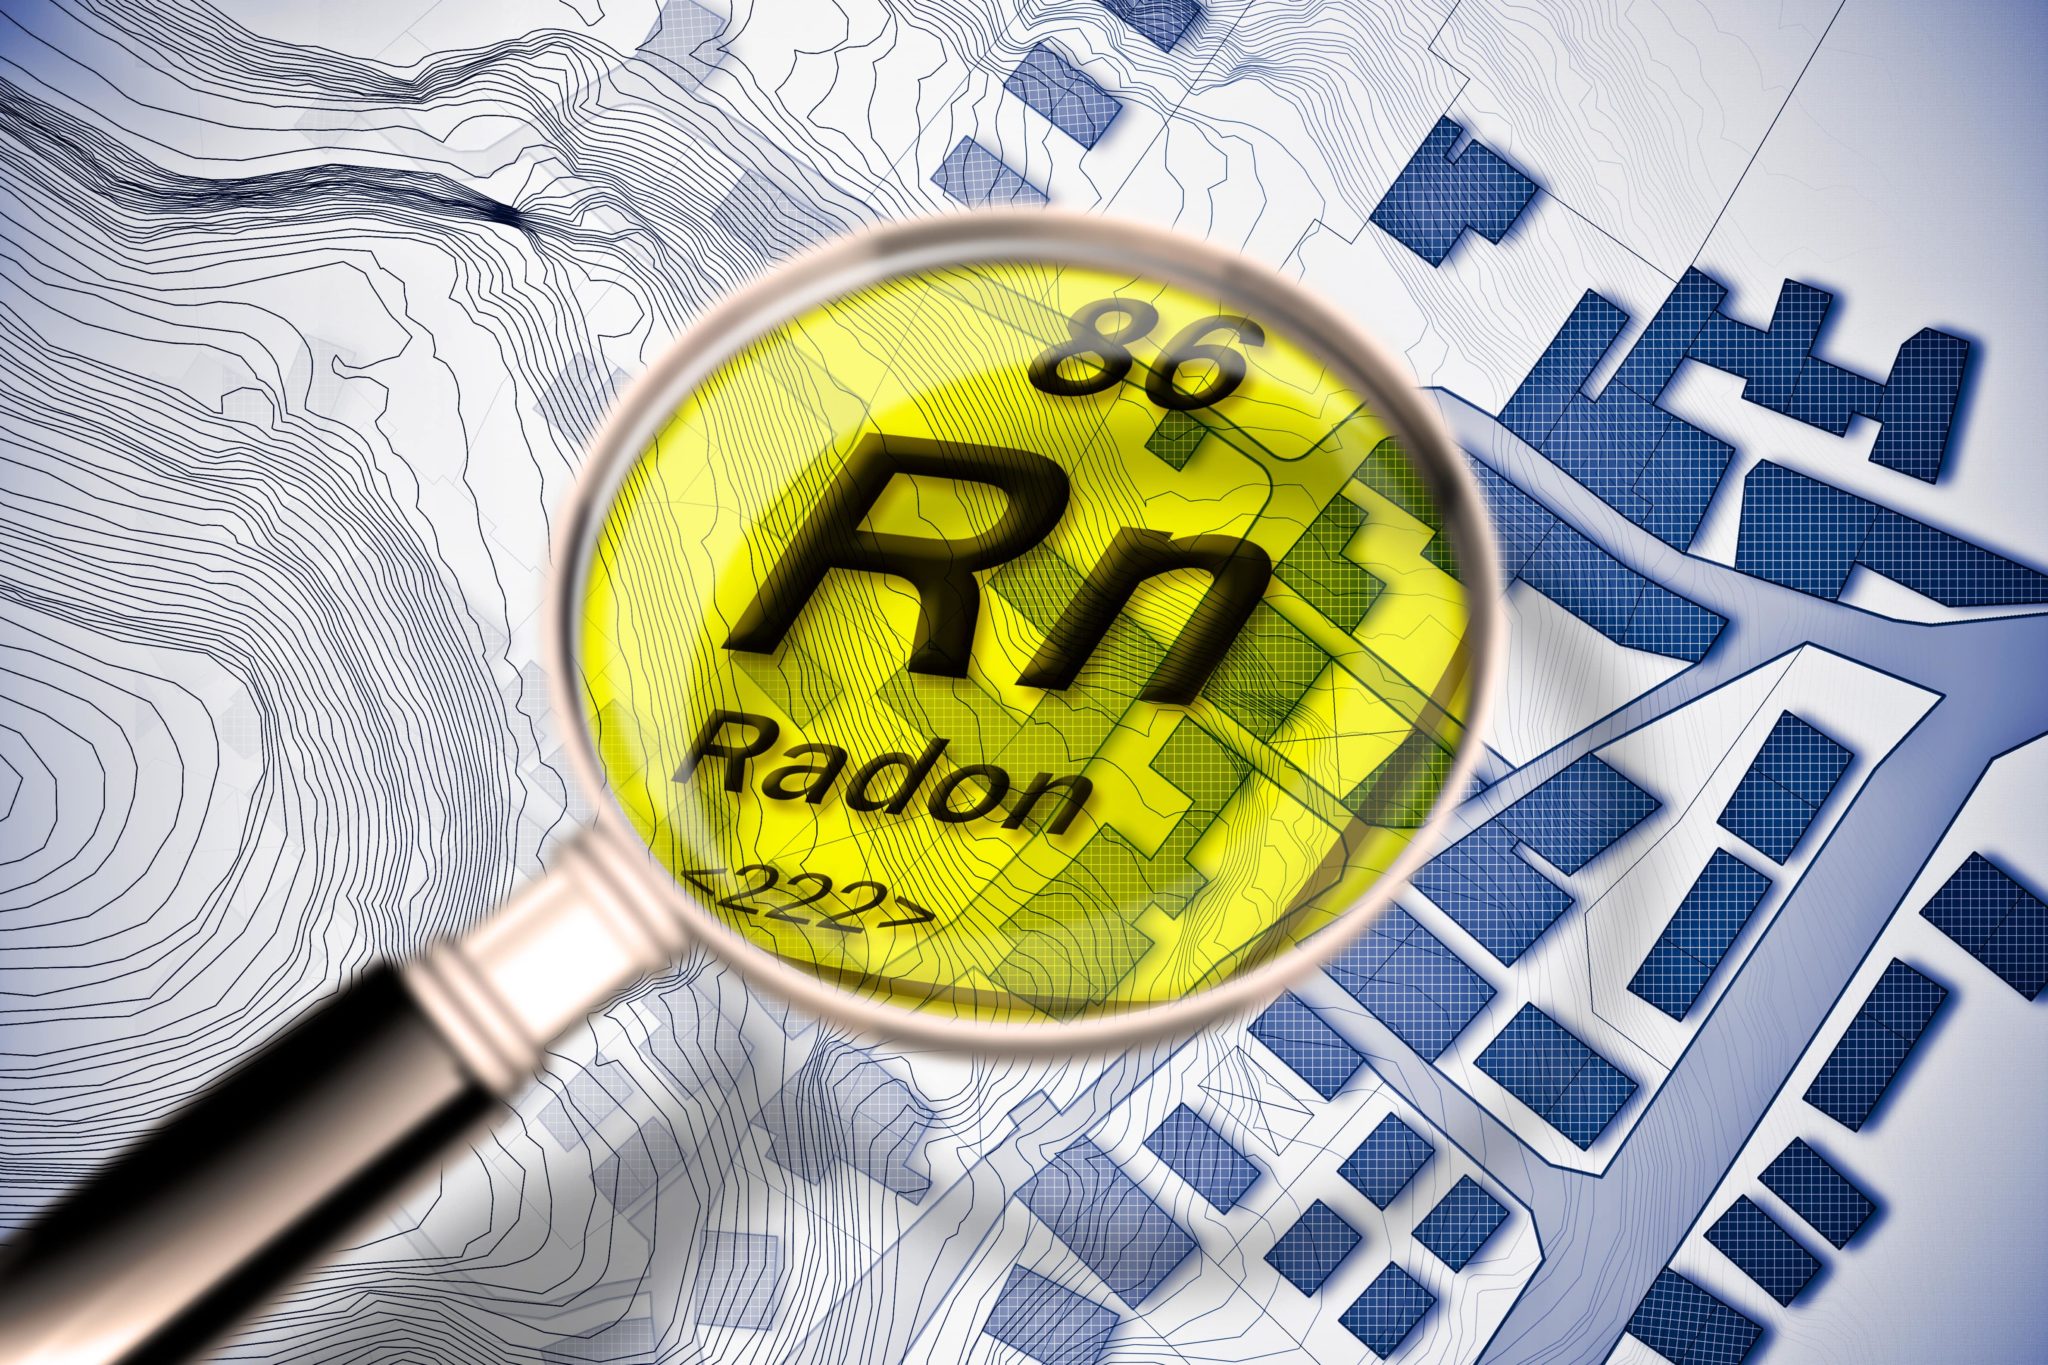 Gas radon, adempimenti obbligatori: se ne discute a Caselle in Pittari